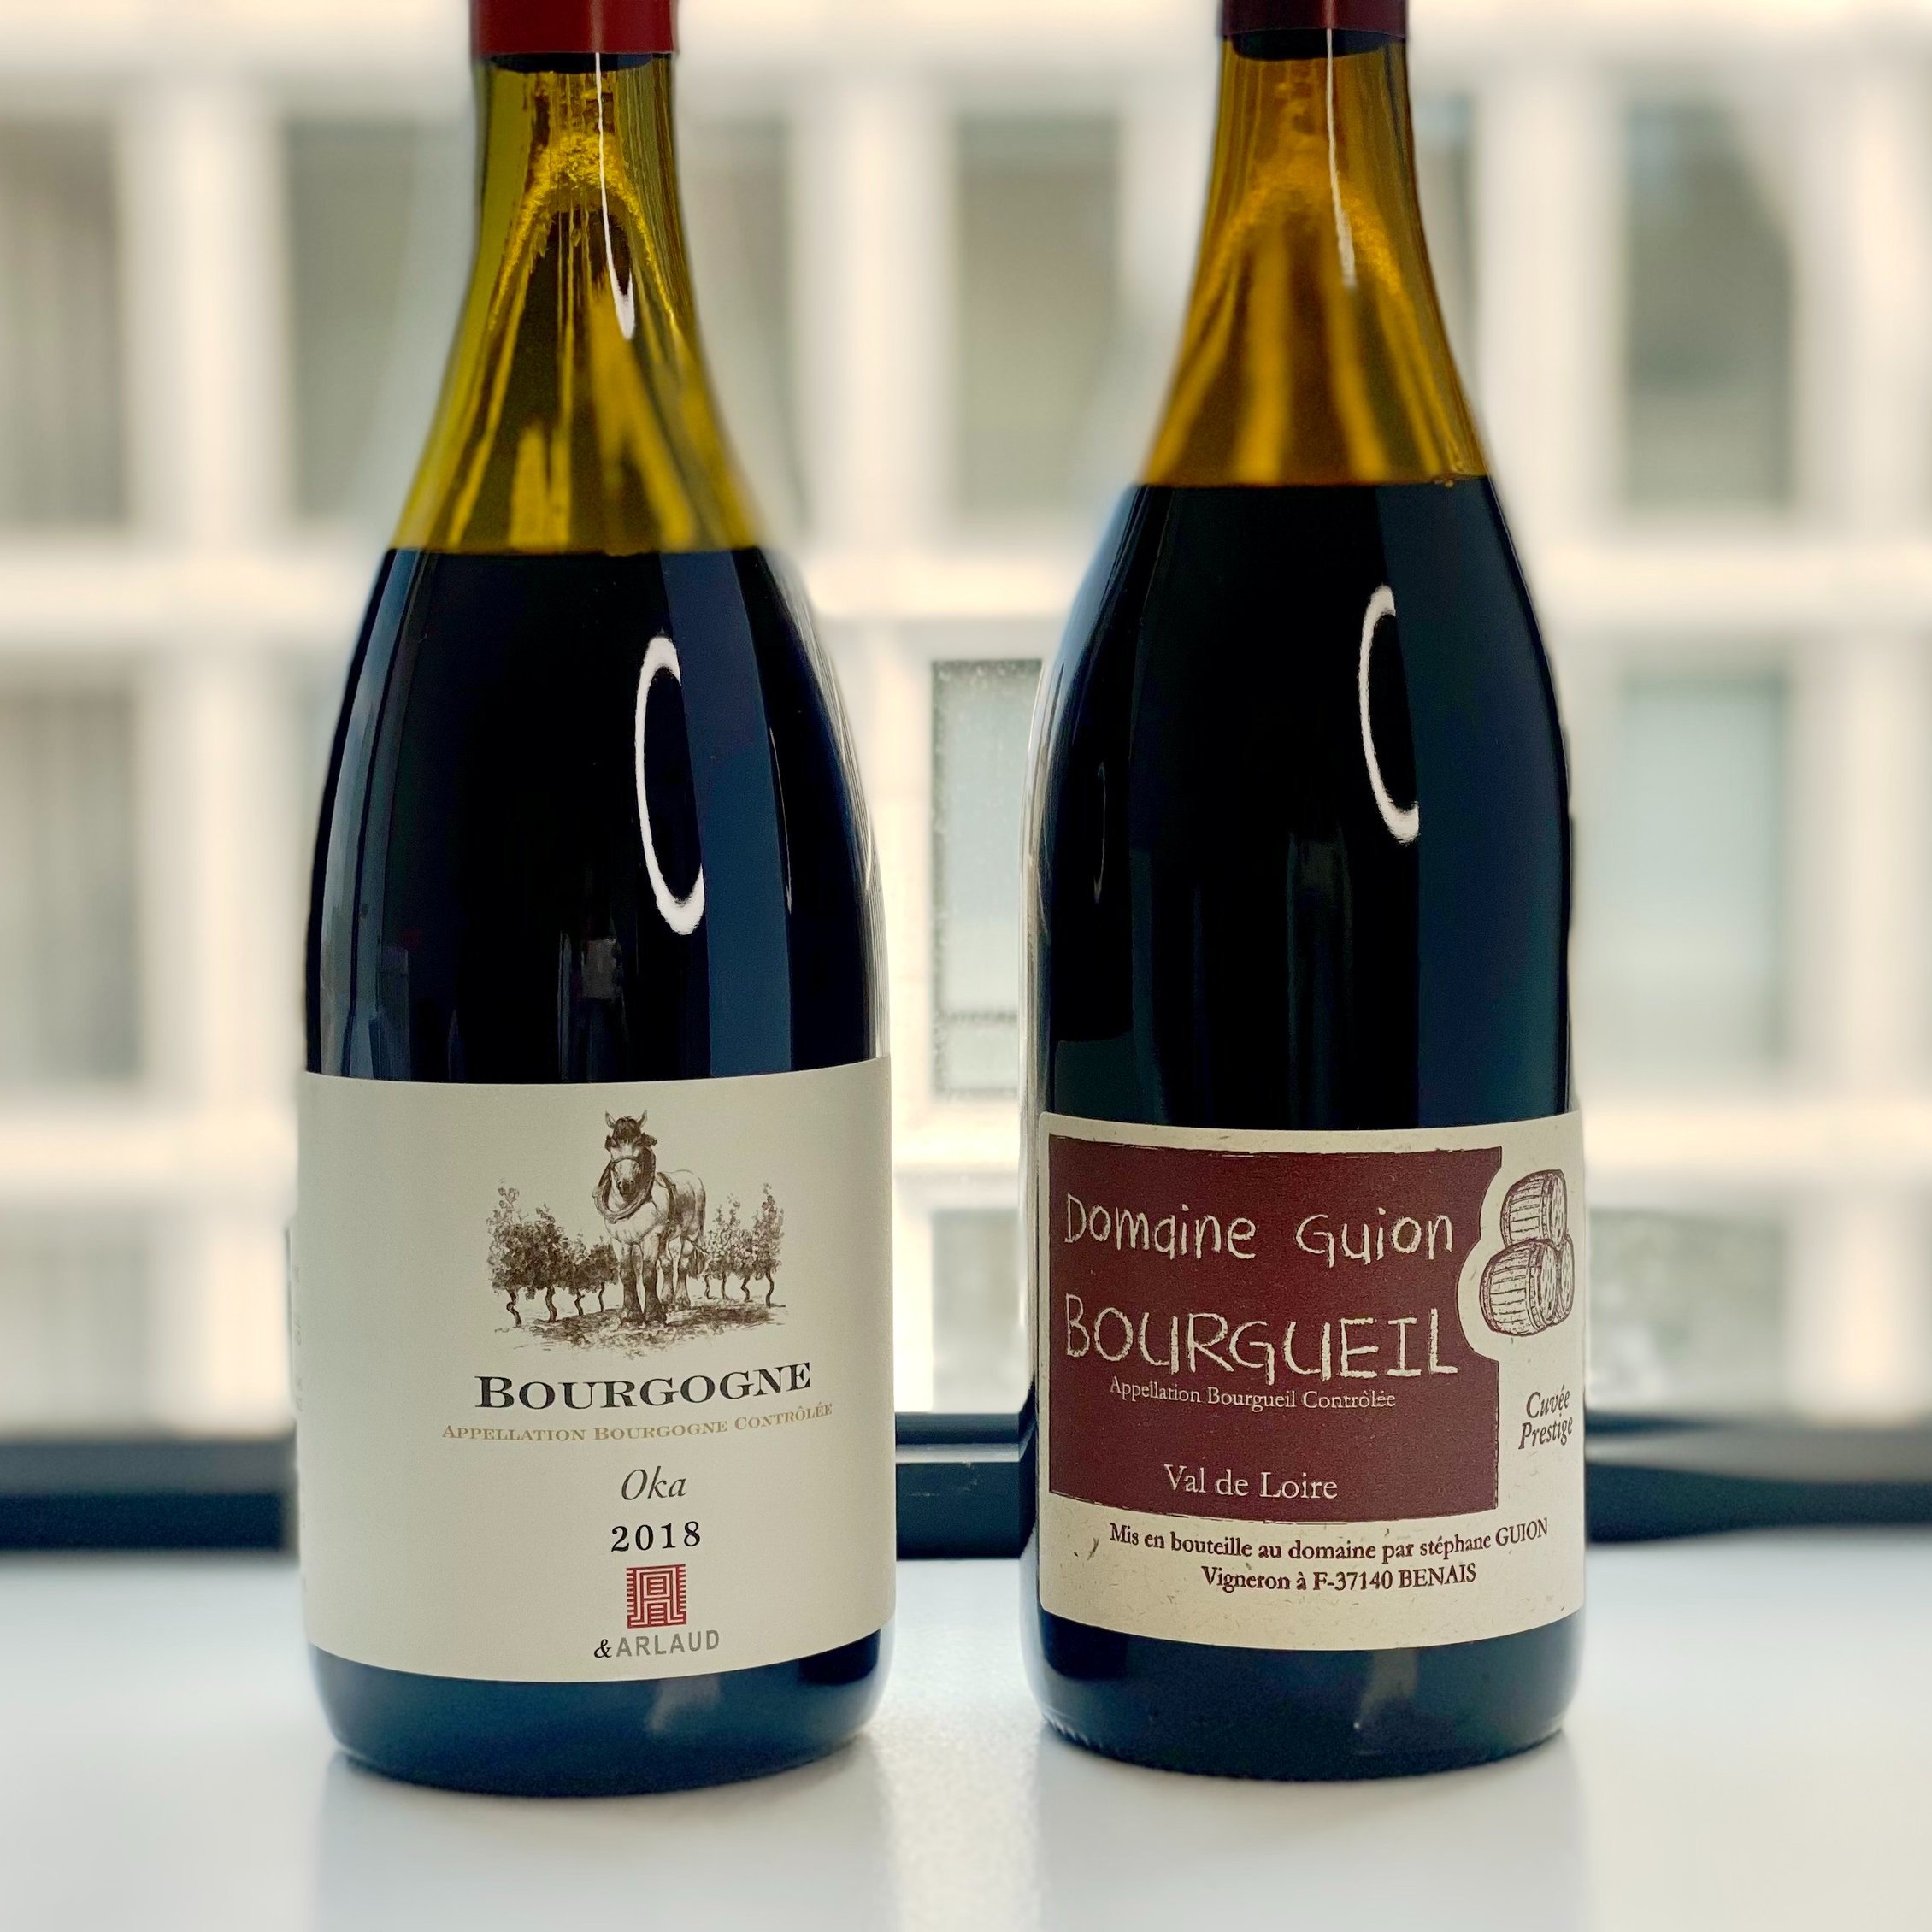  Domaine Guion Cuvée Prestige Bourgueil Loire, France 🇫🇷 2018   Domaine Arlaud “Oka” Bourgogne Rouge, France 🇫🇷 2018  